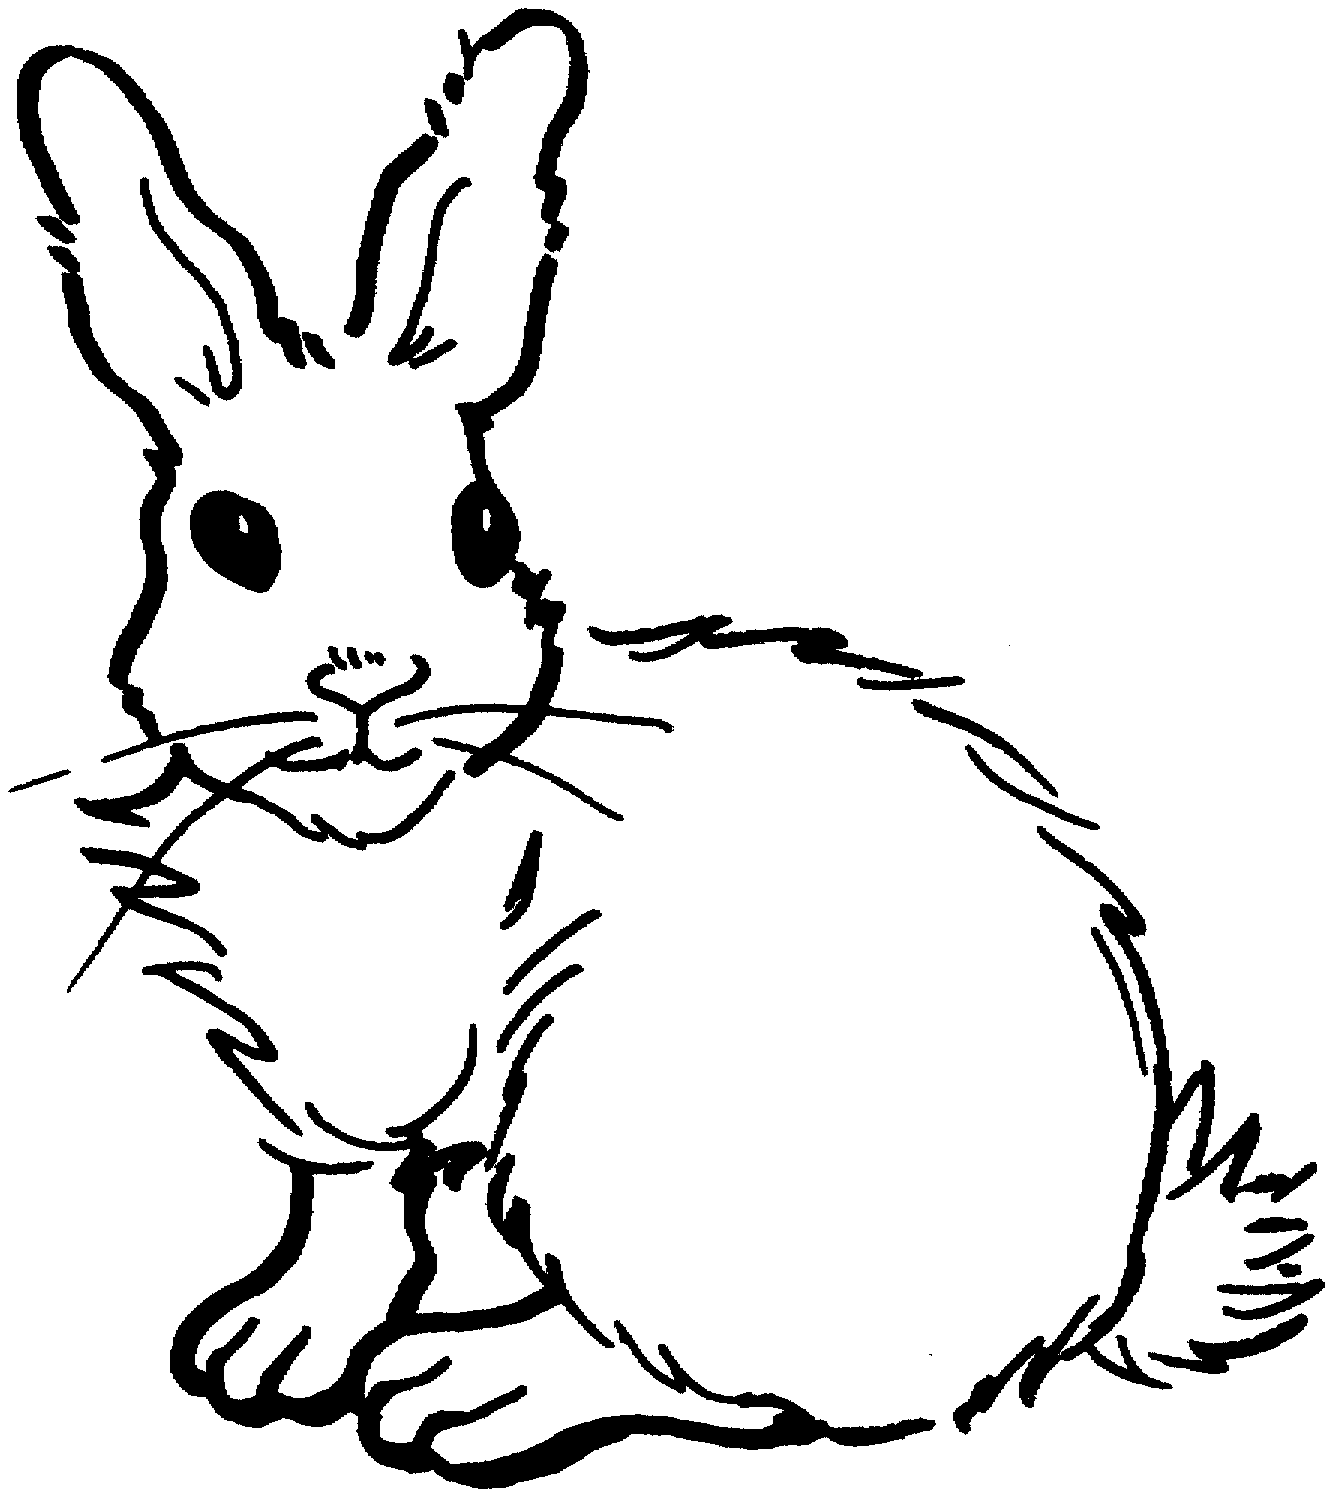 أرنب ذو لحيتين على كل جانب من خده من أرنب